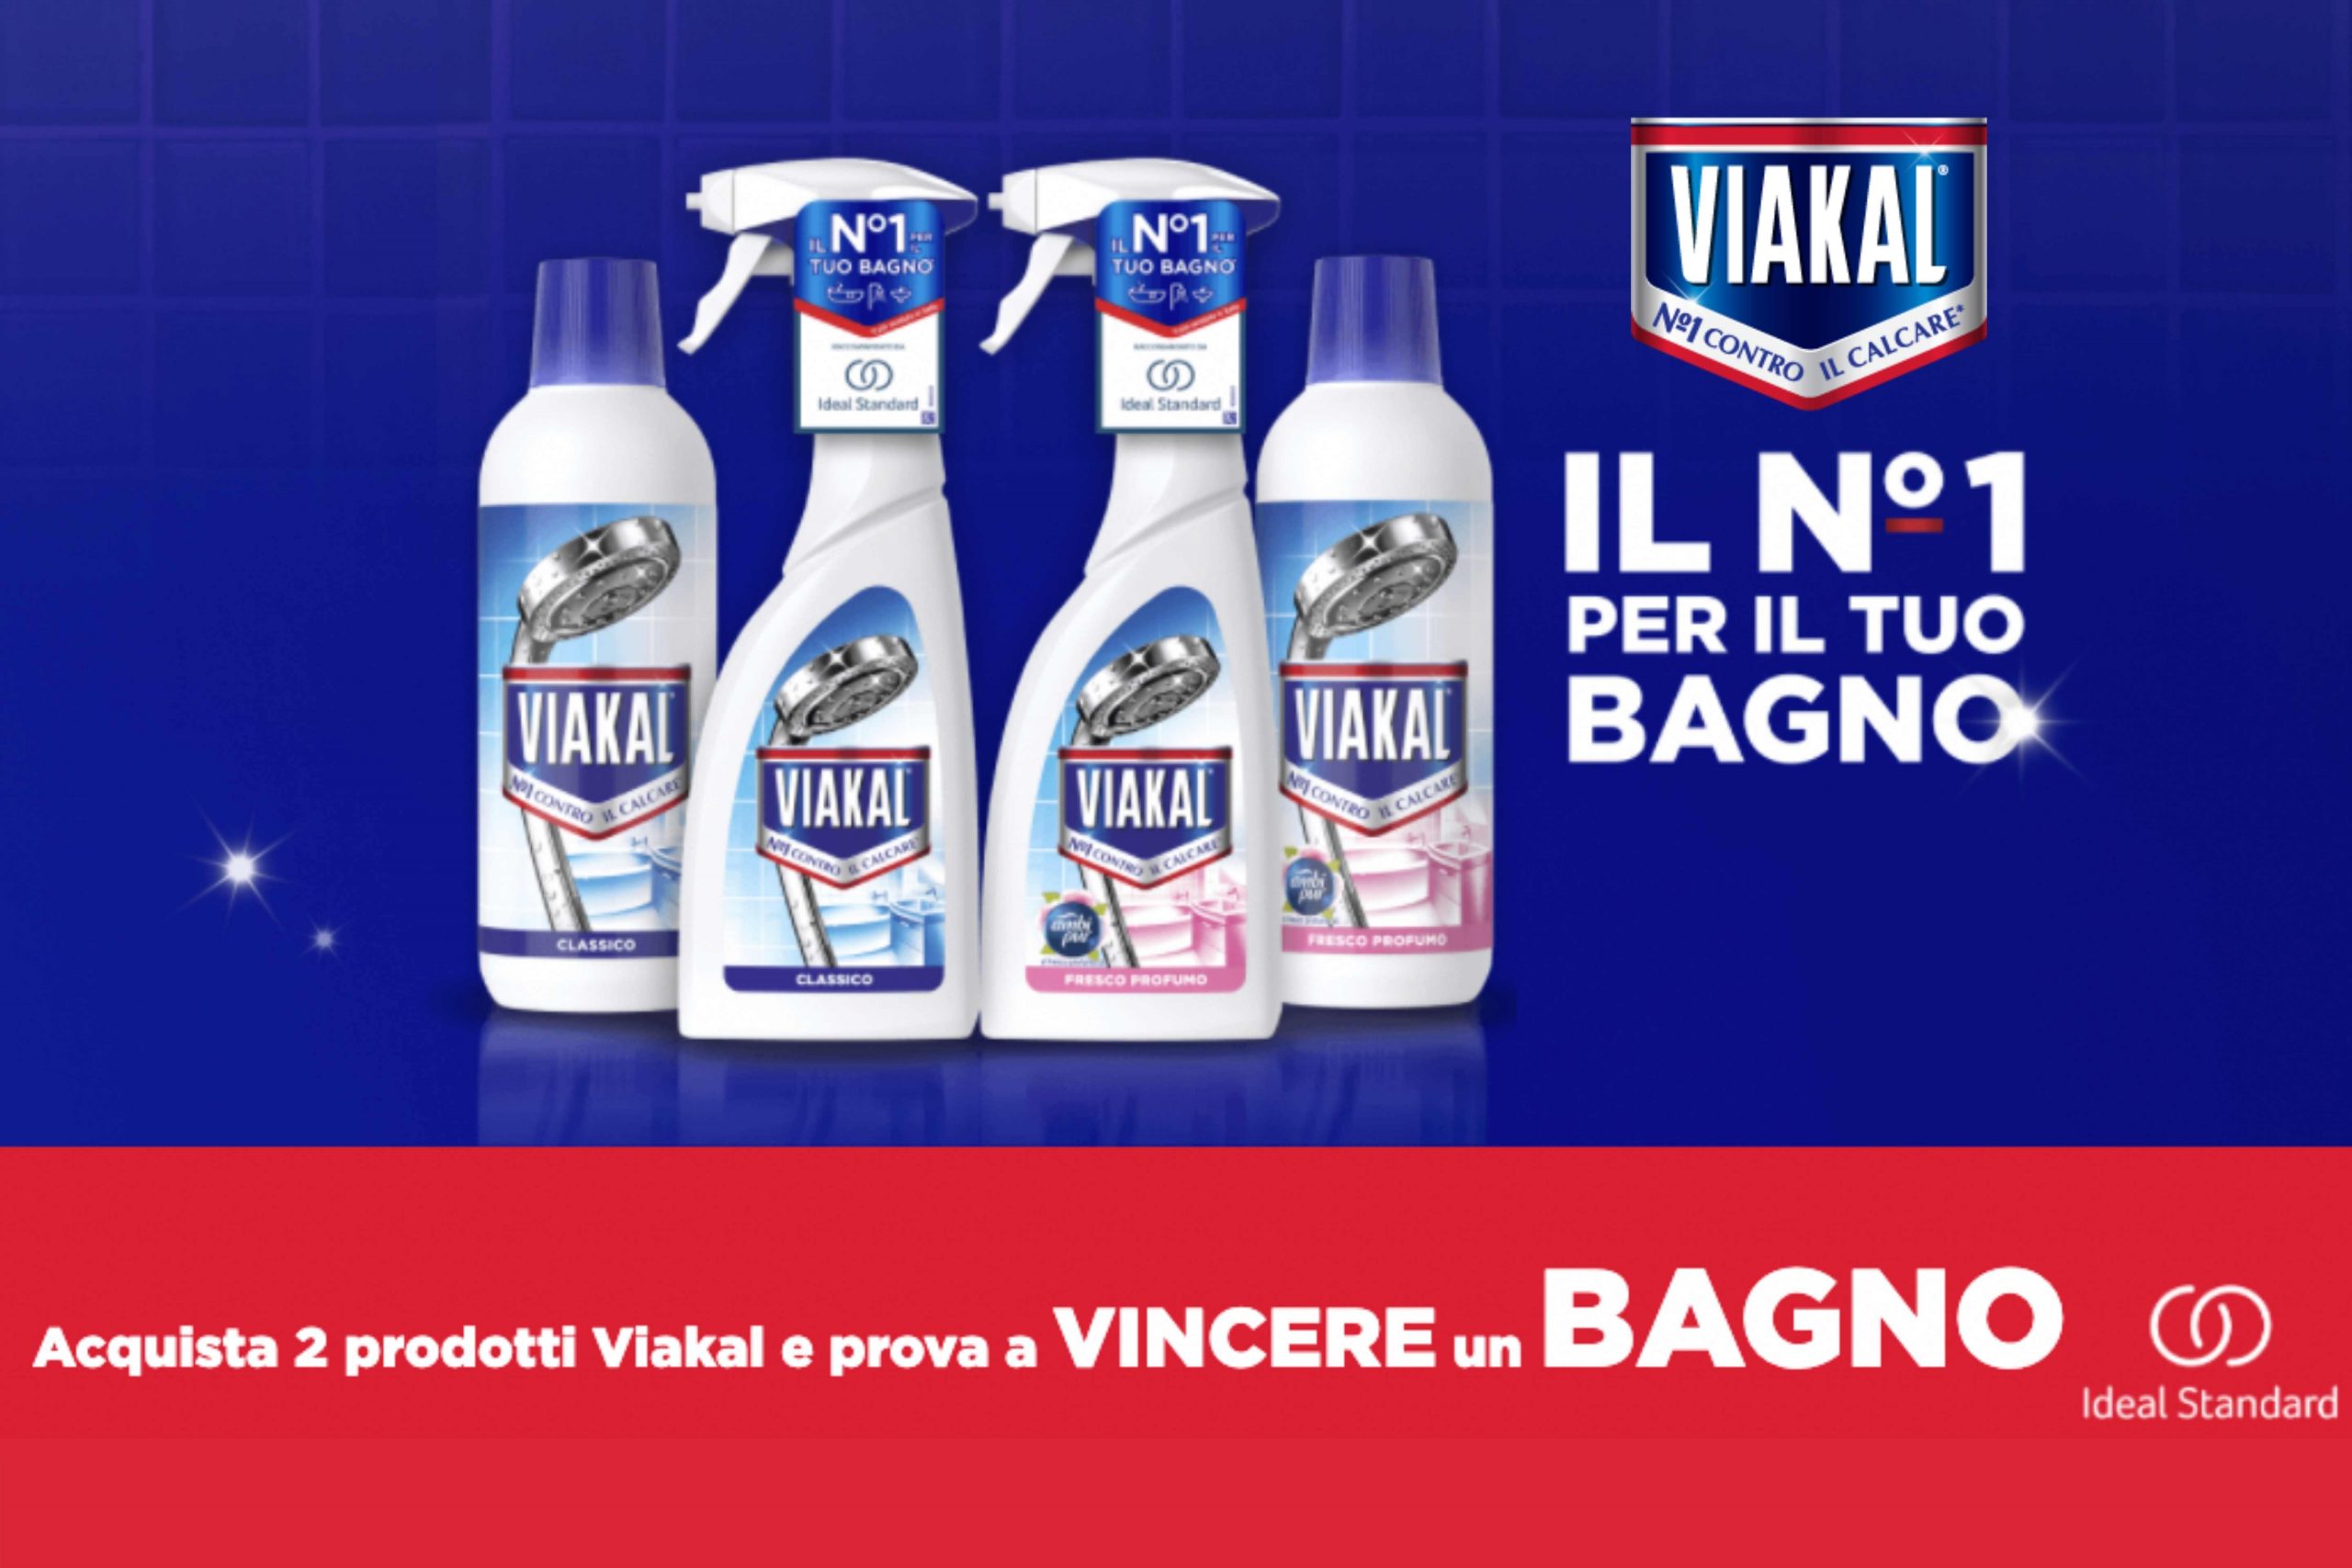 Concorso “Vinci un bagno con Viakal”: come vincere 12 Buoni Acquisto Ideal Standard da 2.000€